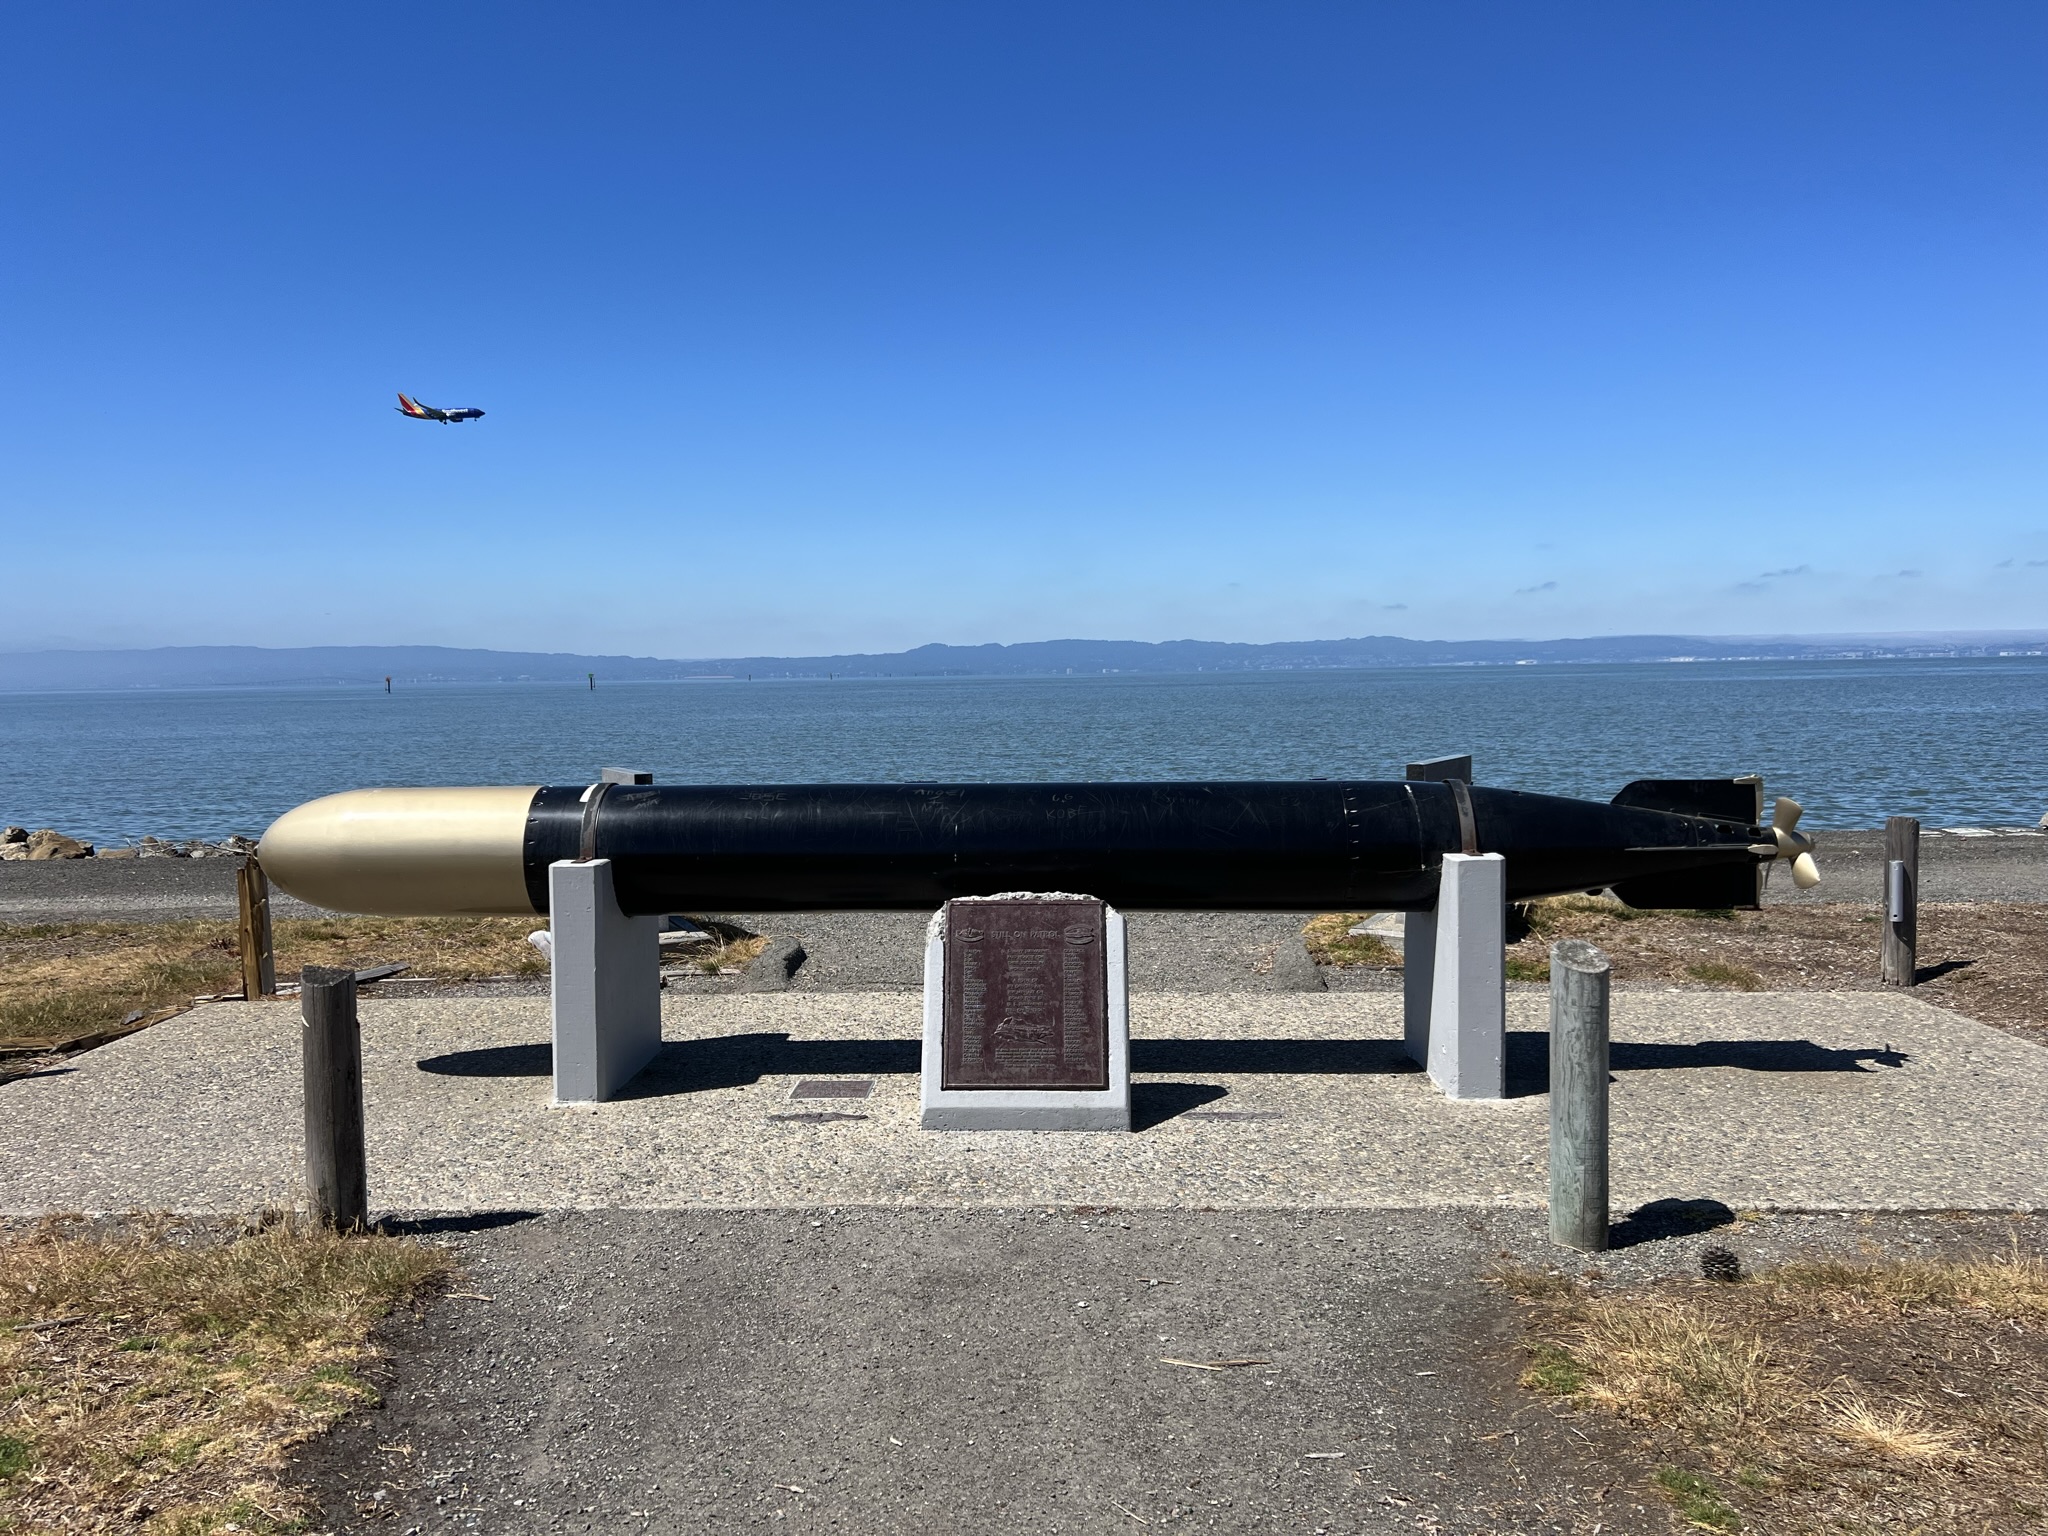 潜艇纪念碑后飞机飞过